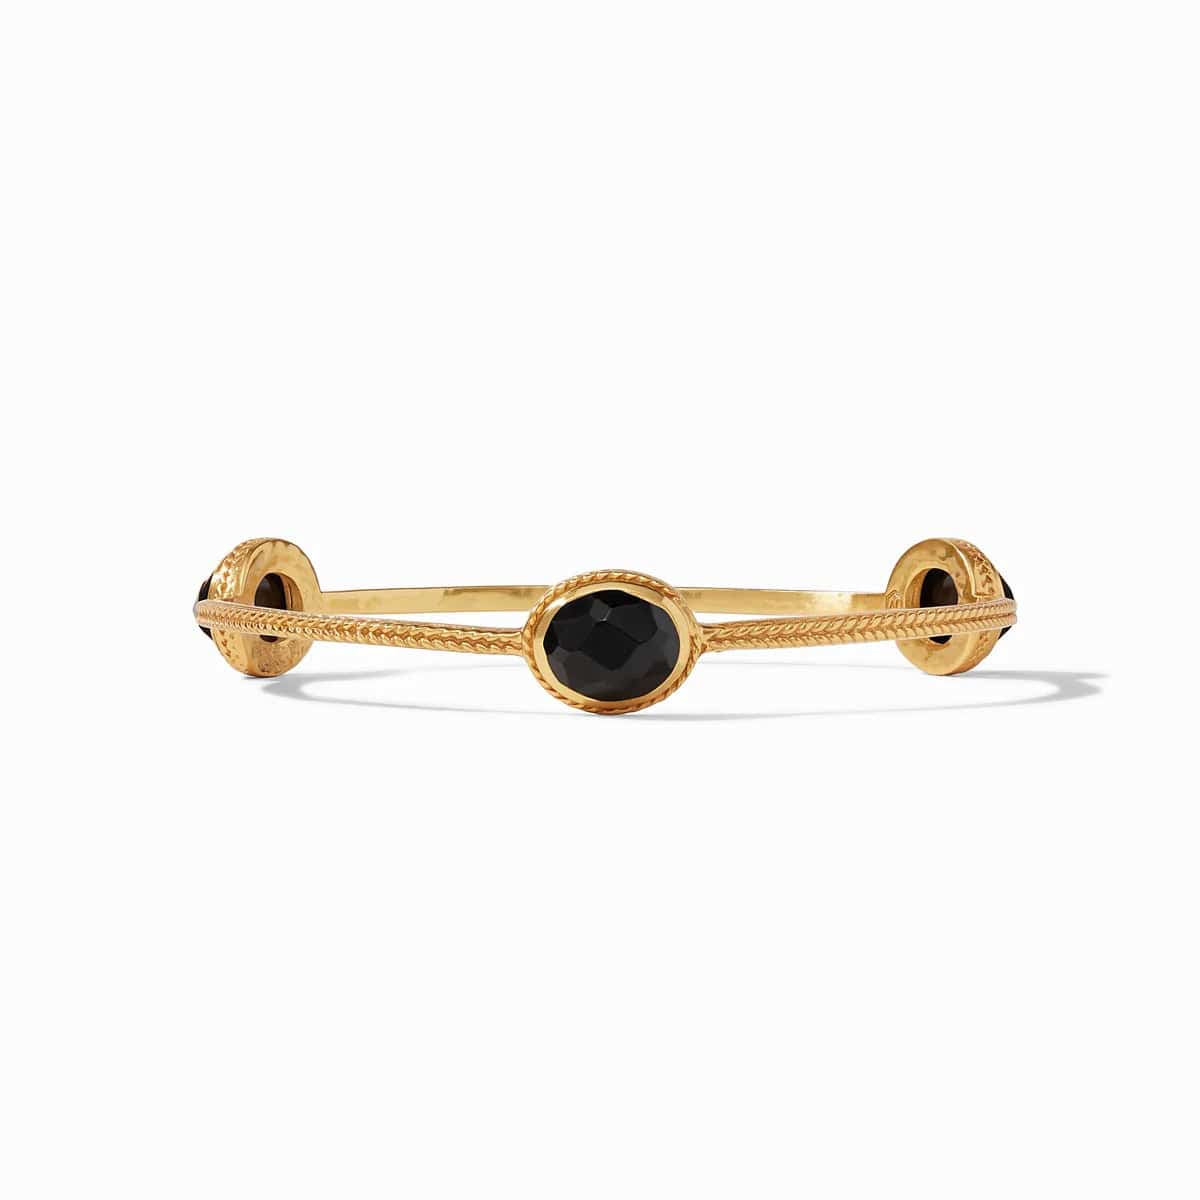 Julie Vos - Calypso Gold Bangle Bracelet - Obsidian Black - Findlay Rowe Designs